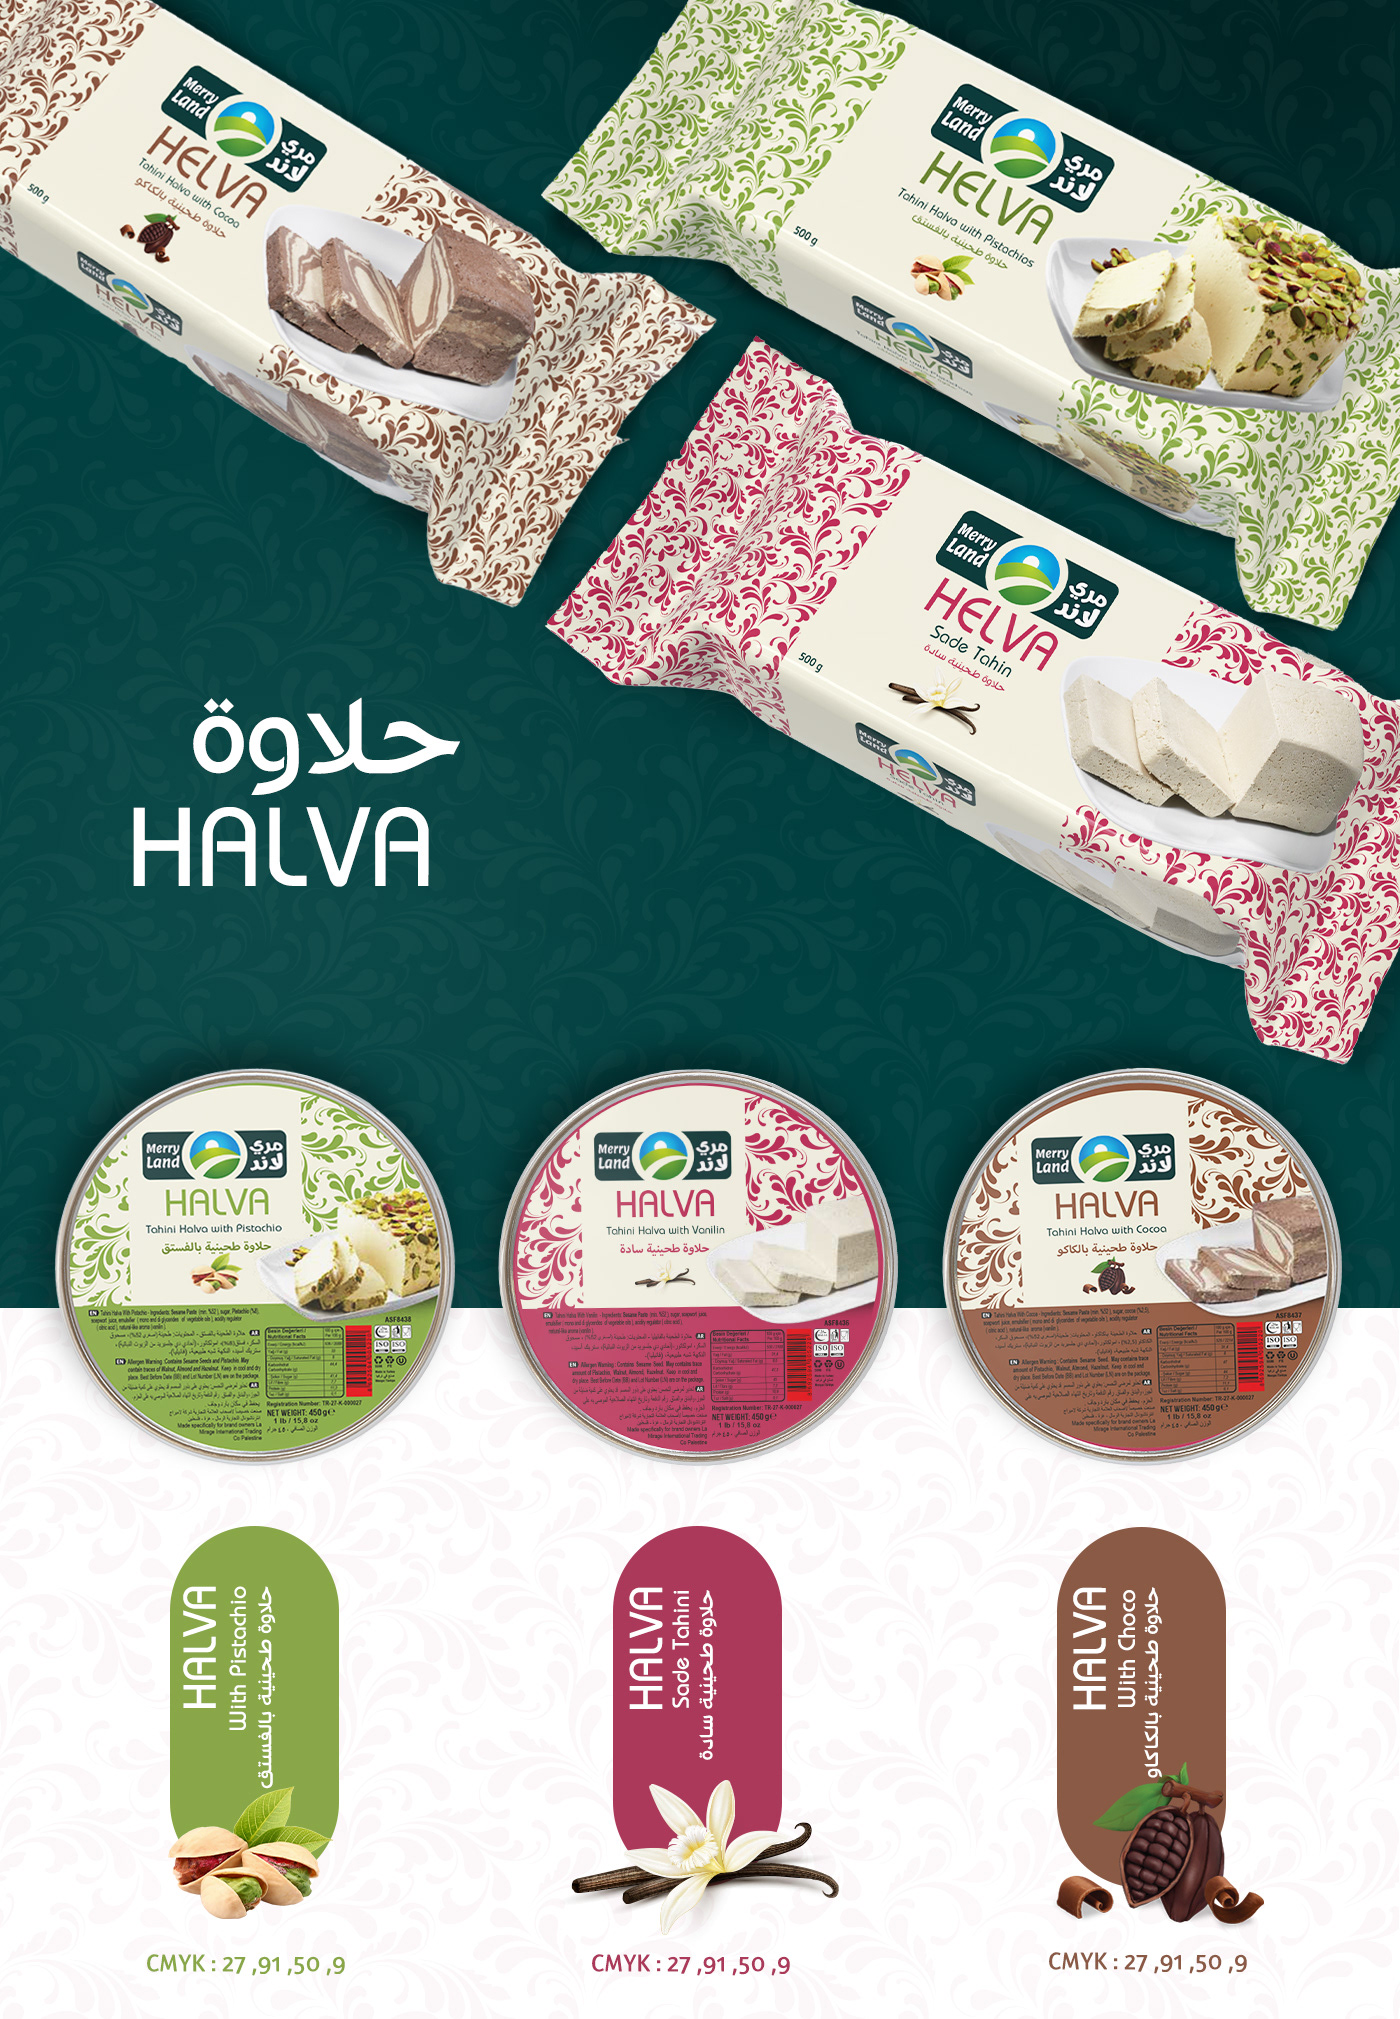 halva dessert oriental Packaging packaging design Label graphic design  designer chocolate pistachio